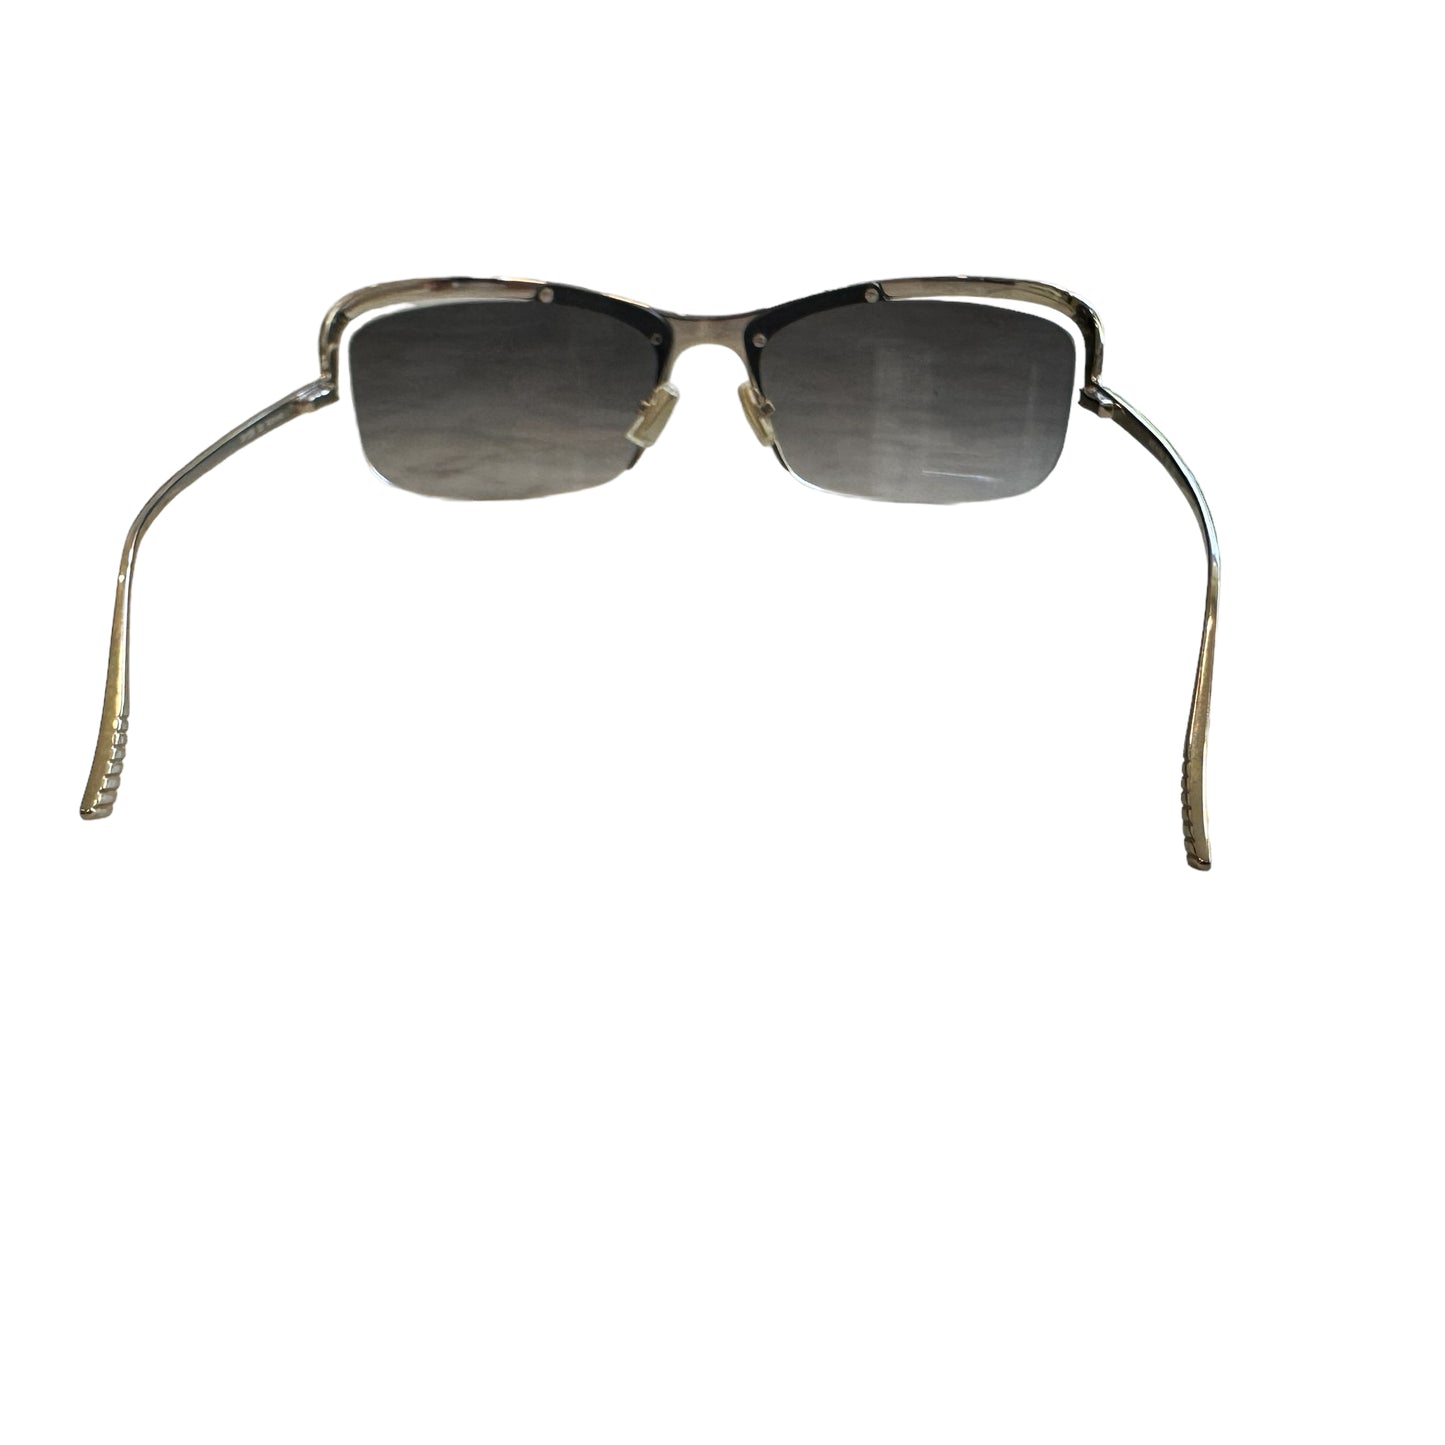 2022 Silver Sunglasses